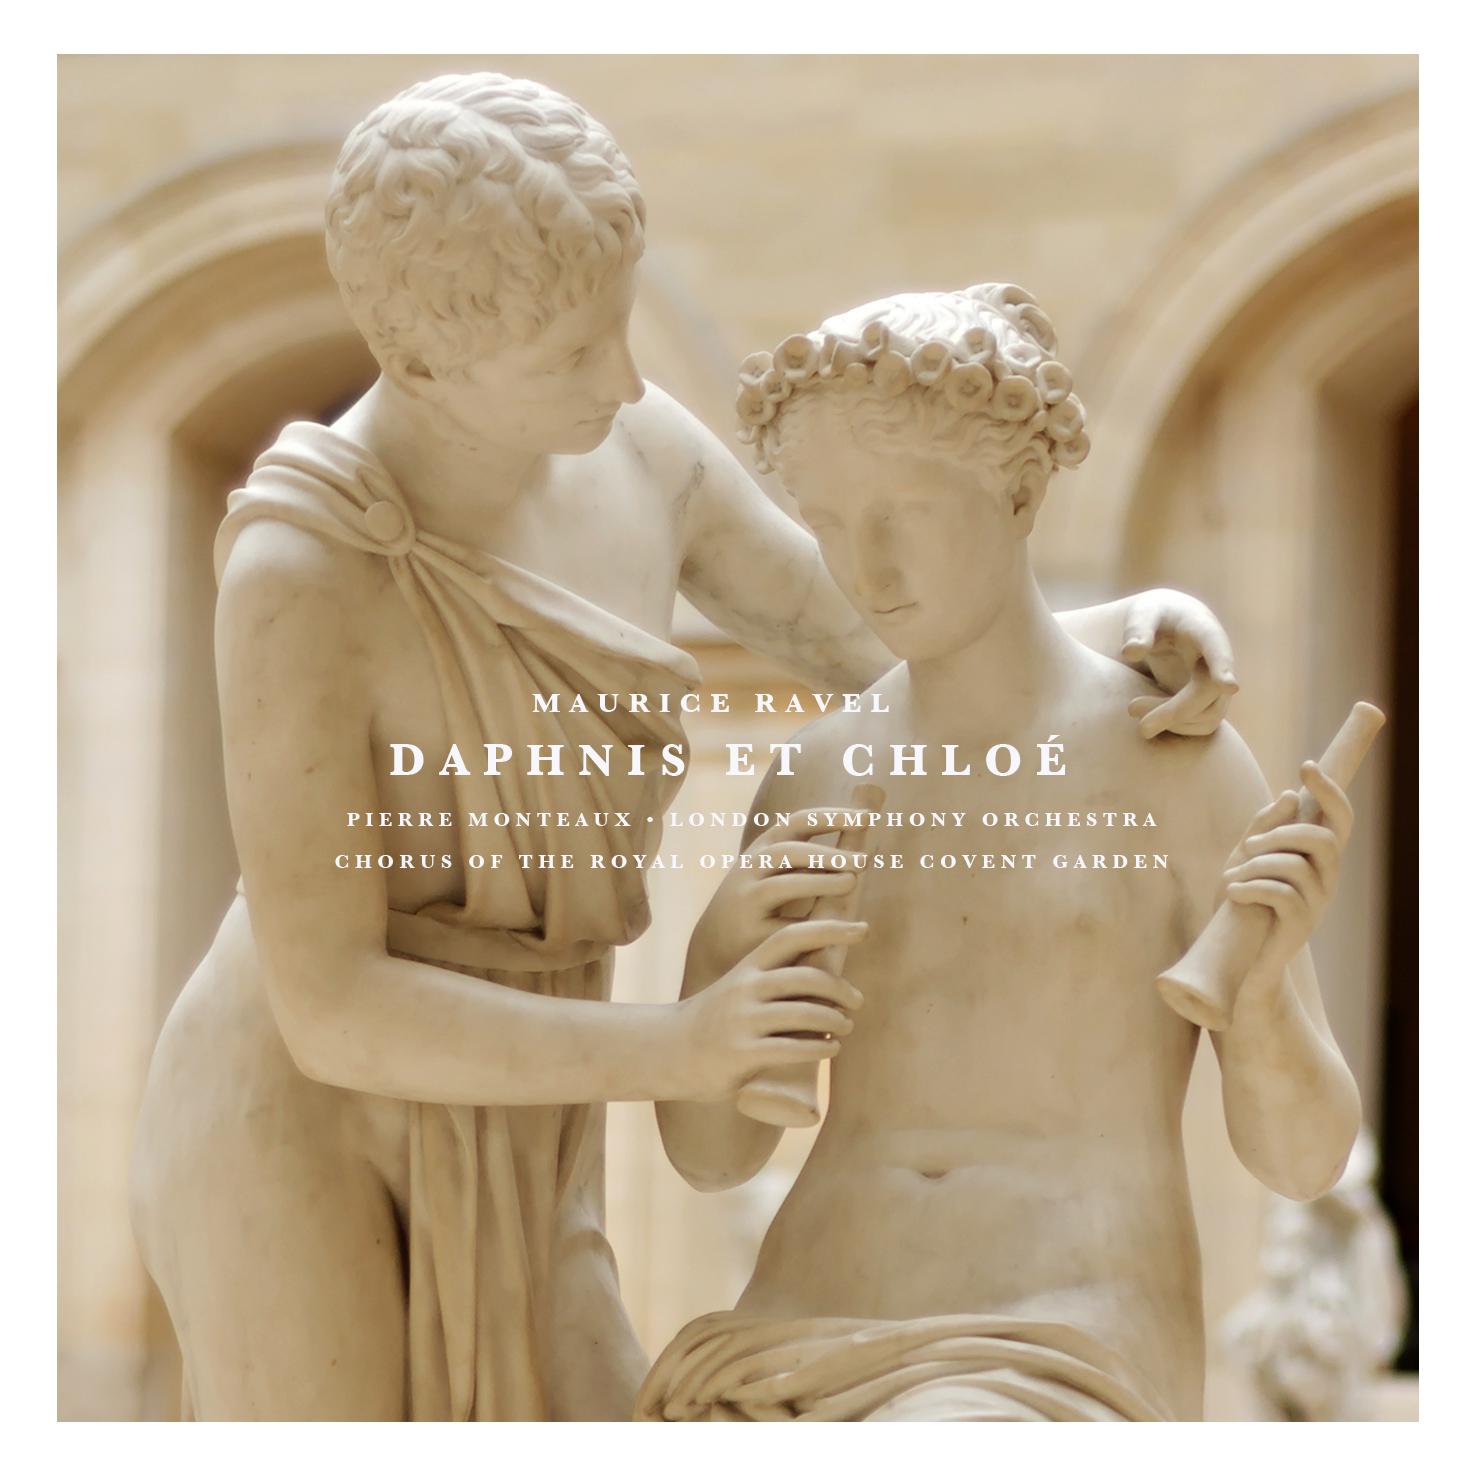 Daphnis Et Chloe: Part I " Danse grotesque de Dorcon"